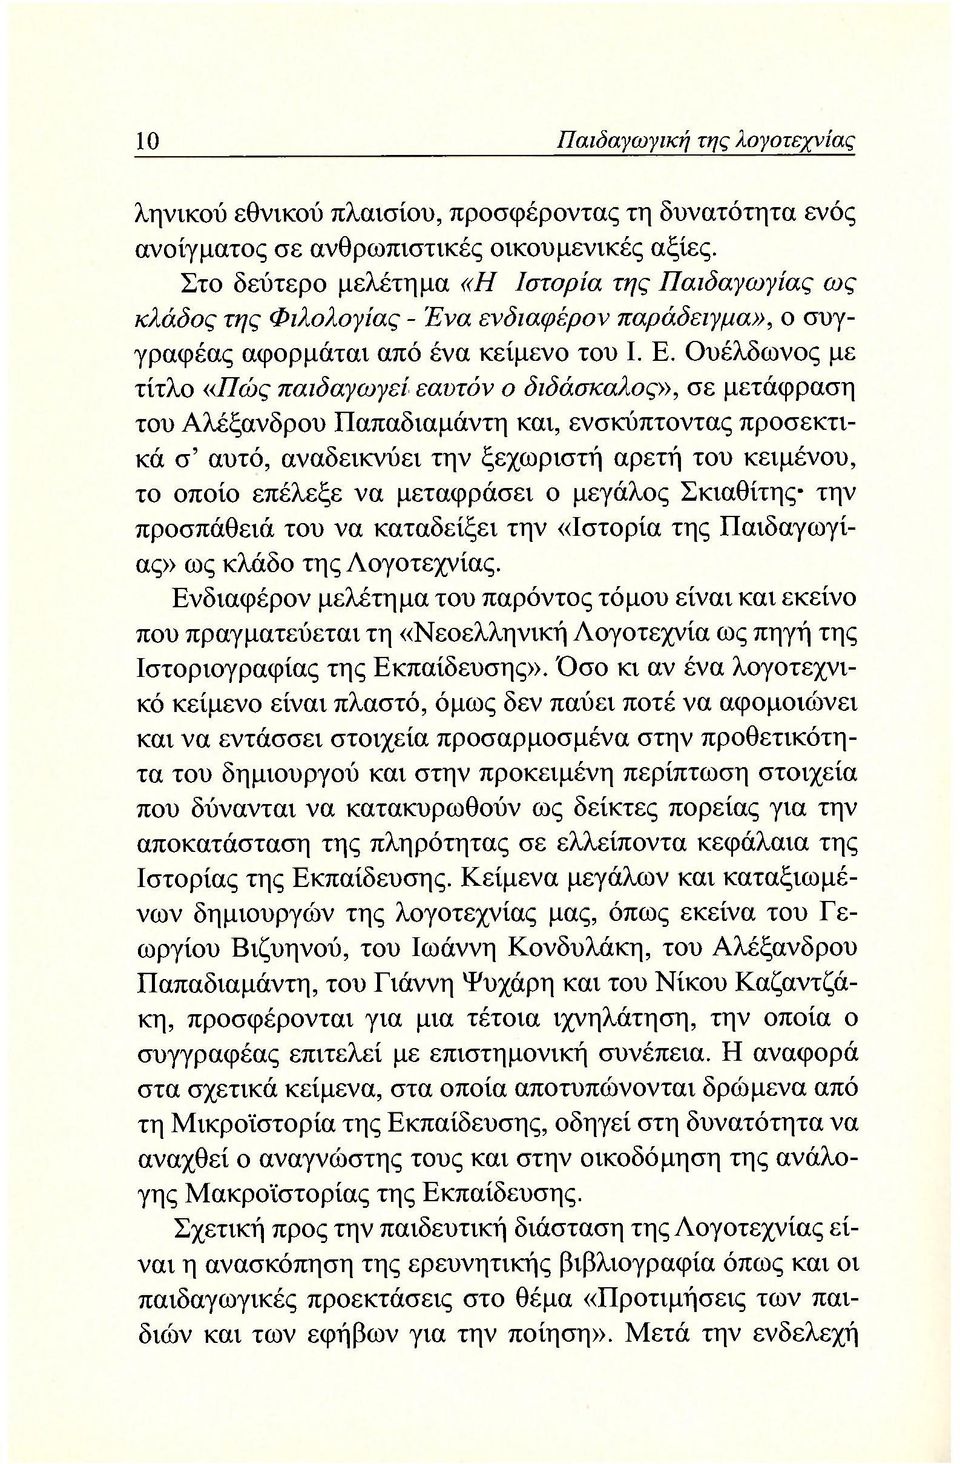 Ουέλδωνος με τίτλο «Πώς παιδαγωγεί εαυτόν ο διδάσκαλος», σε μετάφραση του Αλέξανδρου Παπαδιαμάντη και, ενσκύπτοντας προσεκτικά σ' αυτό, αναδεικνύει την ξεχωριστή αρετή του κειμένου, το οποίο επέλεξε